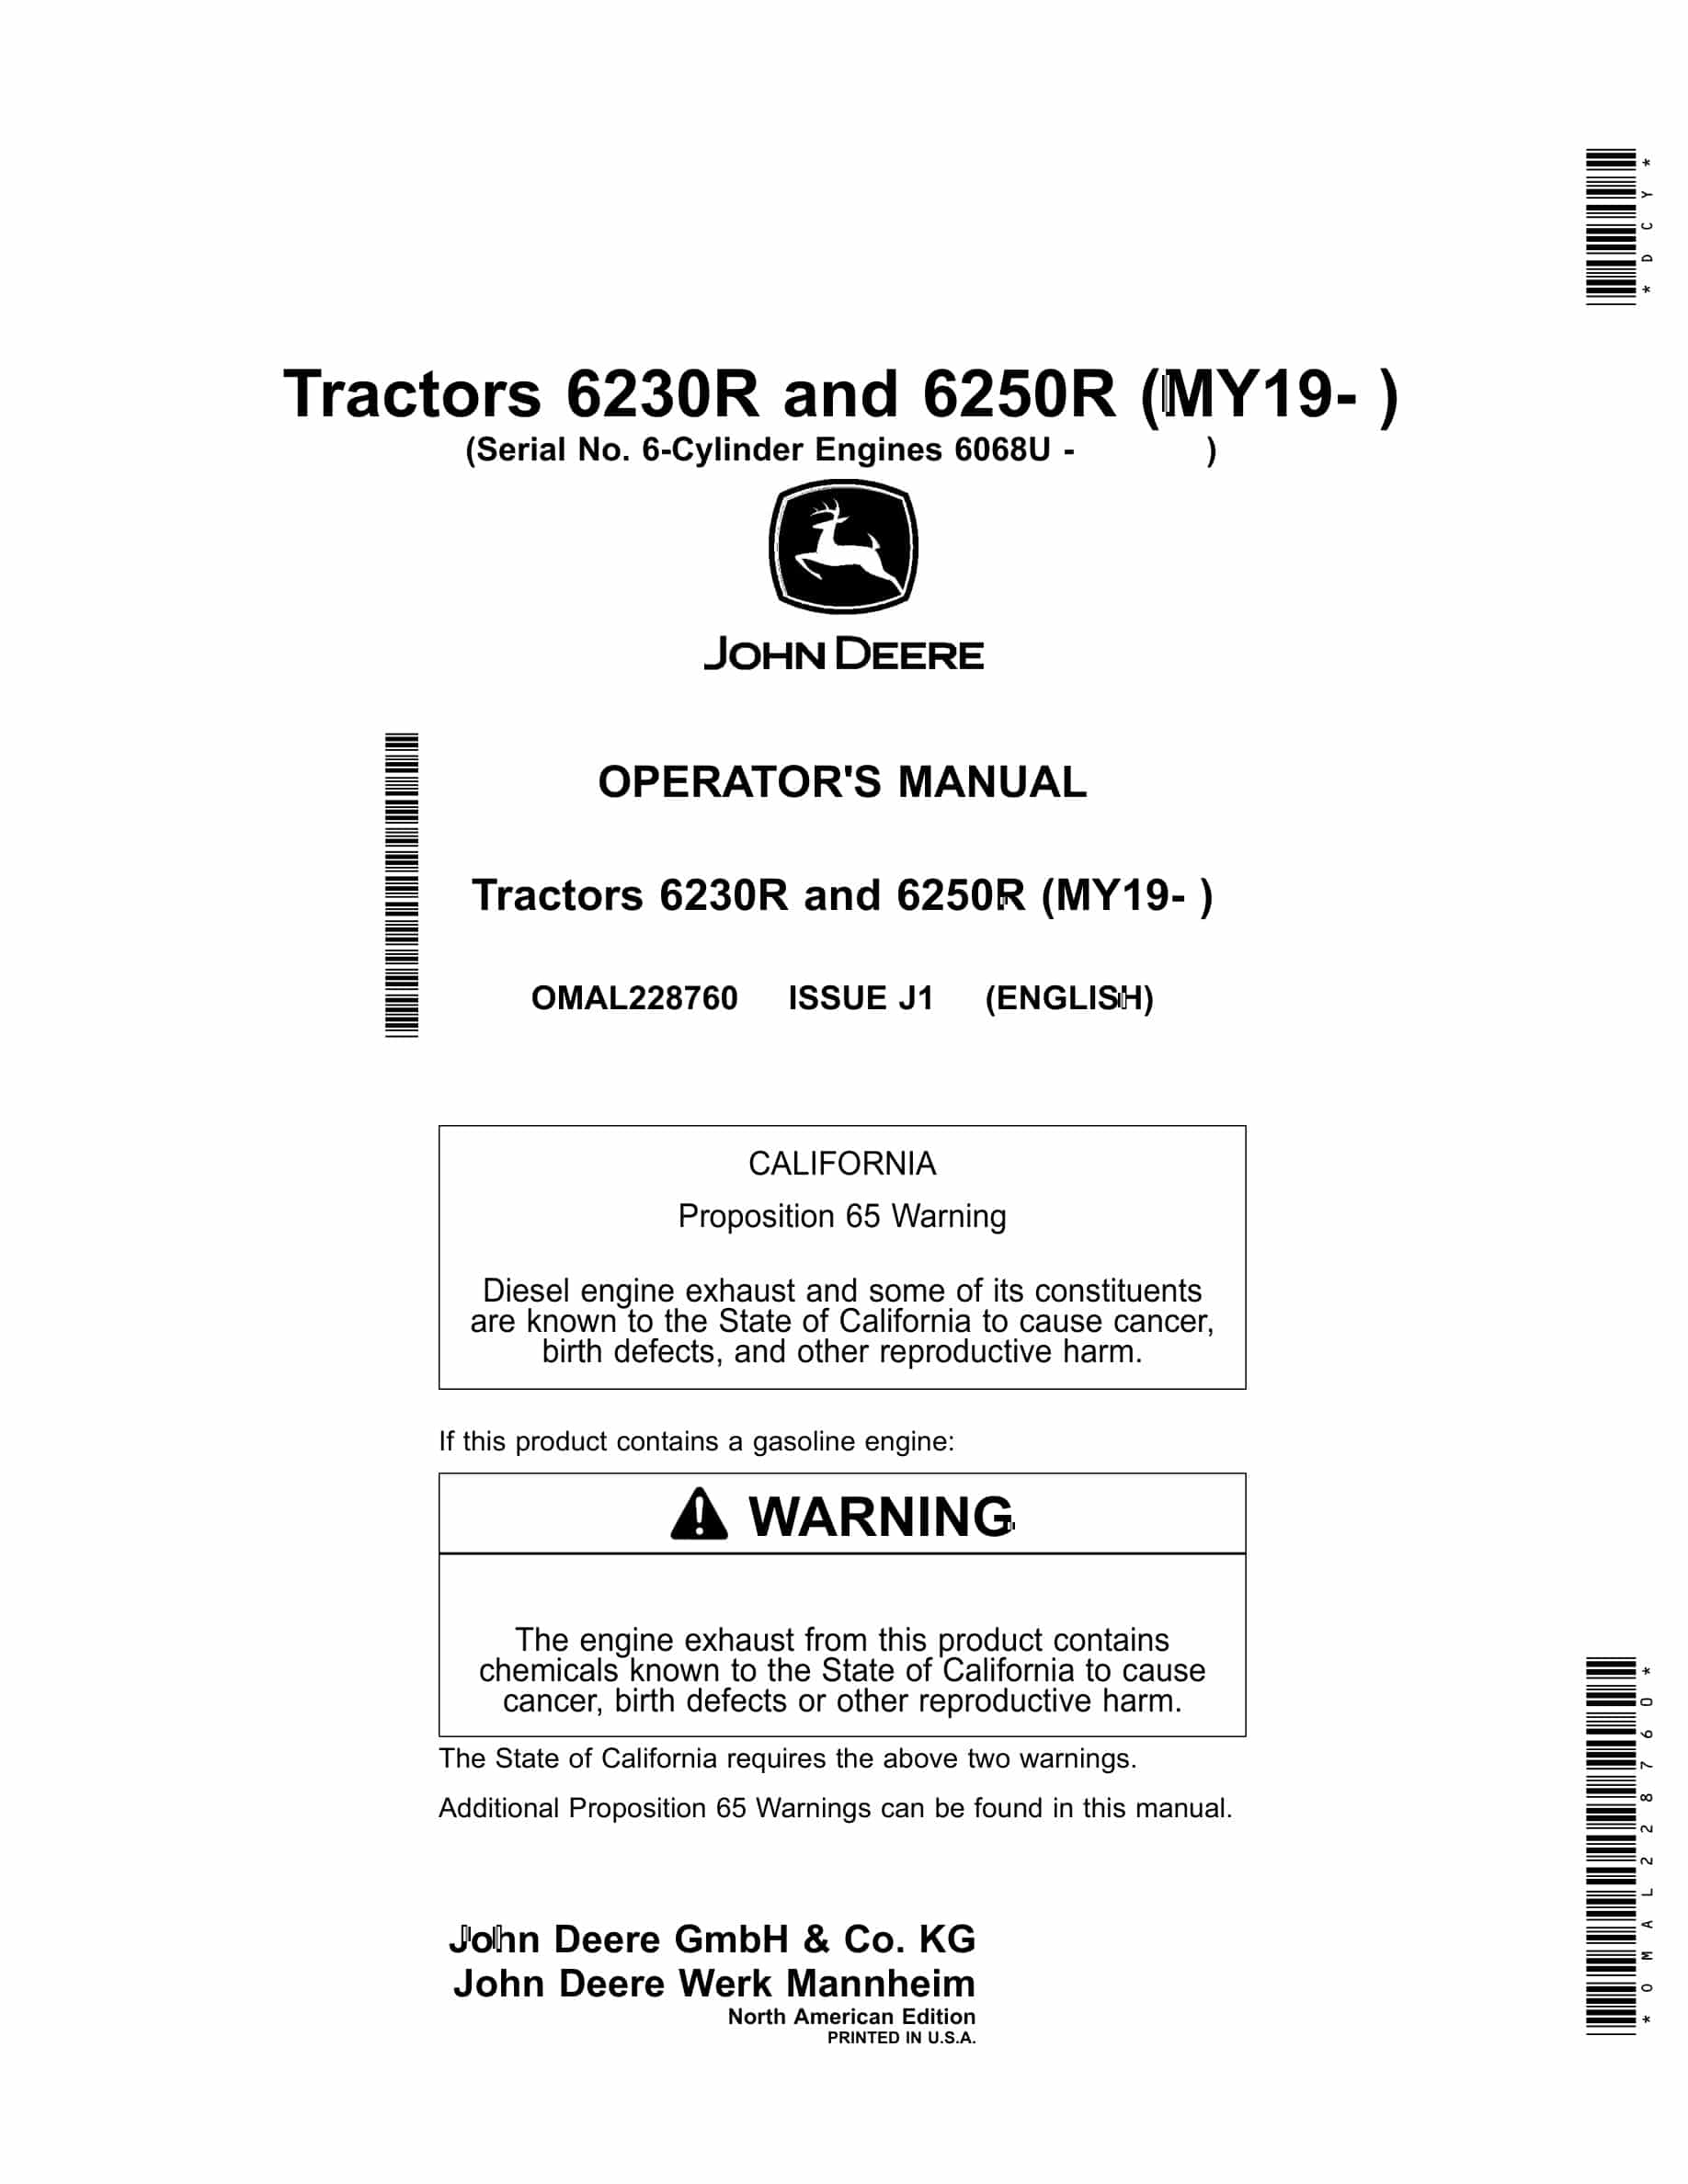 John Deere 6230R and 6250R Tractor Operator Manual OMAL228760-1